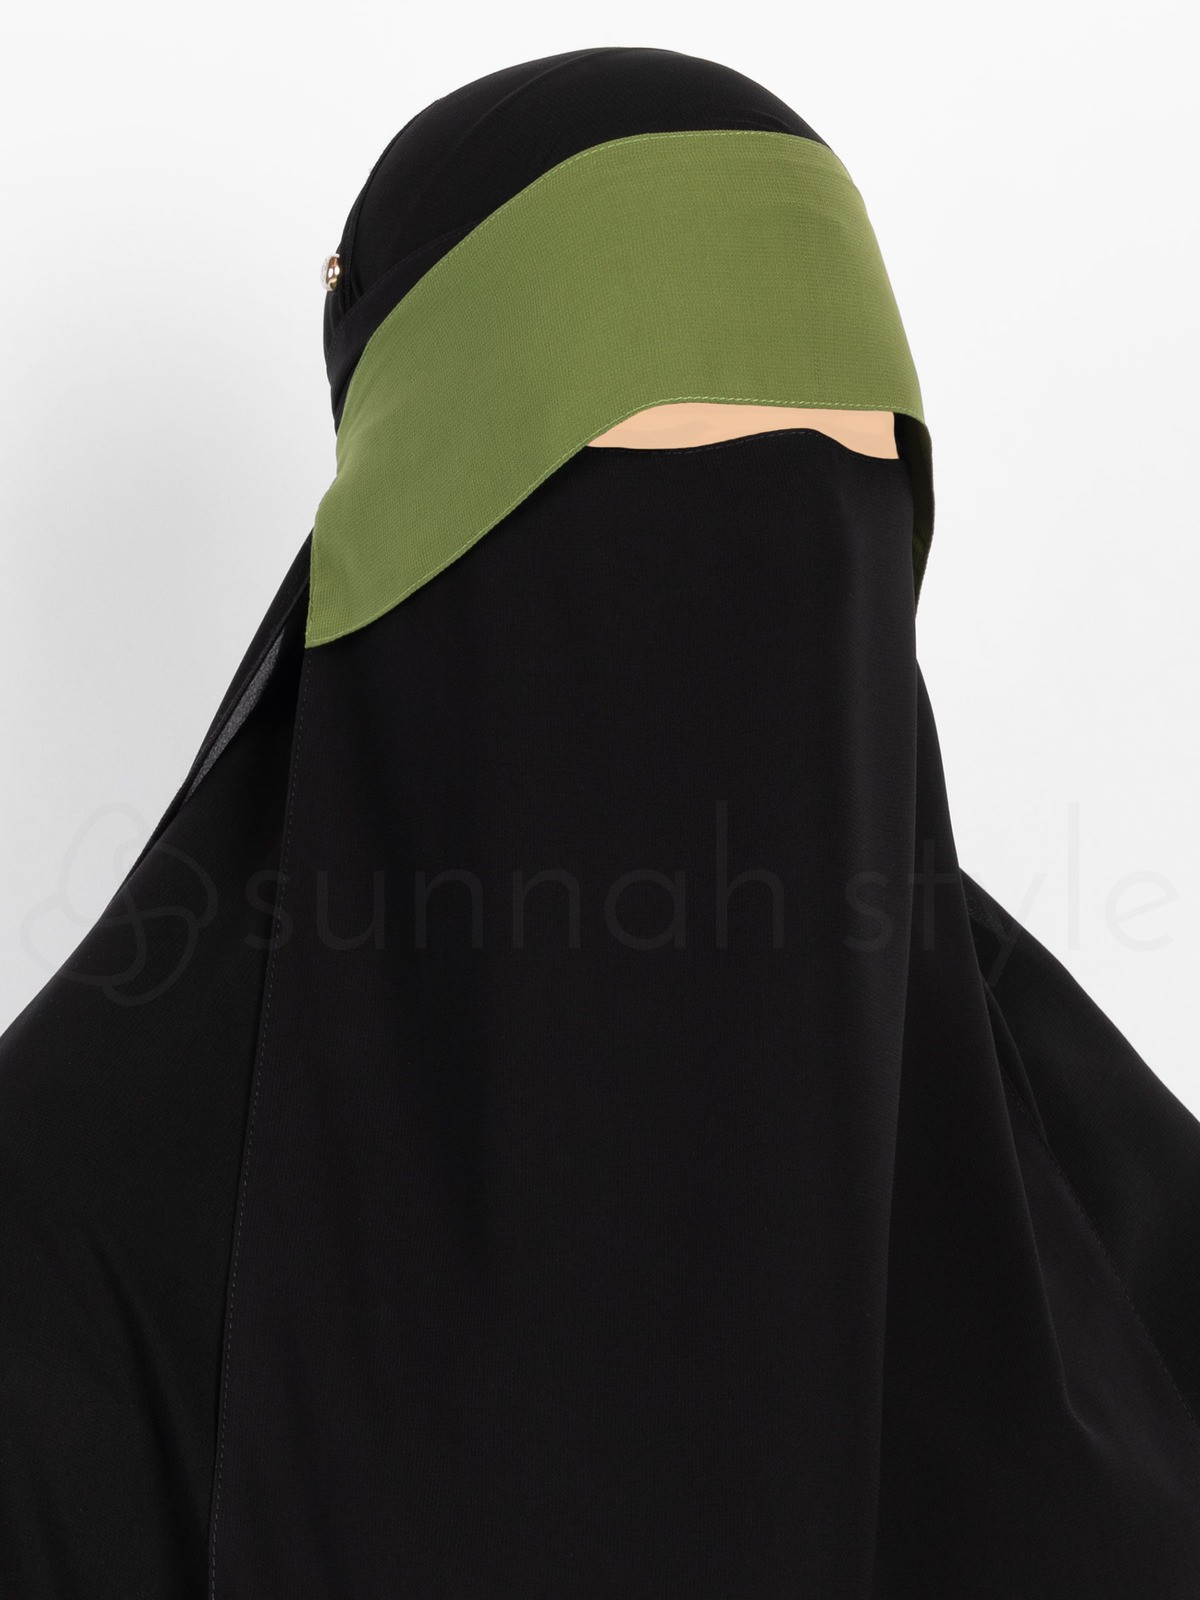 Sunnah Style - Adjustable Niqab Flap (Olive)